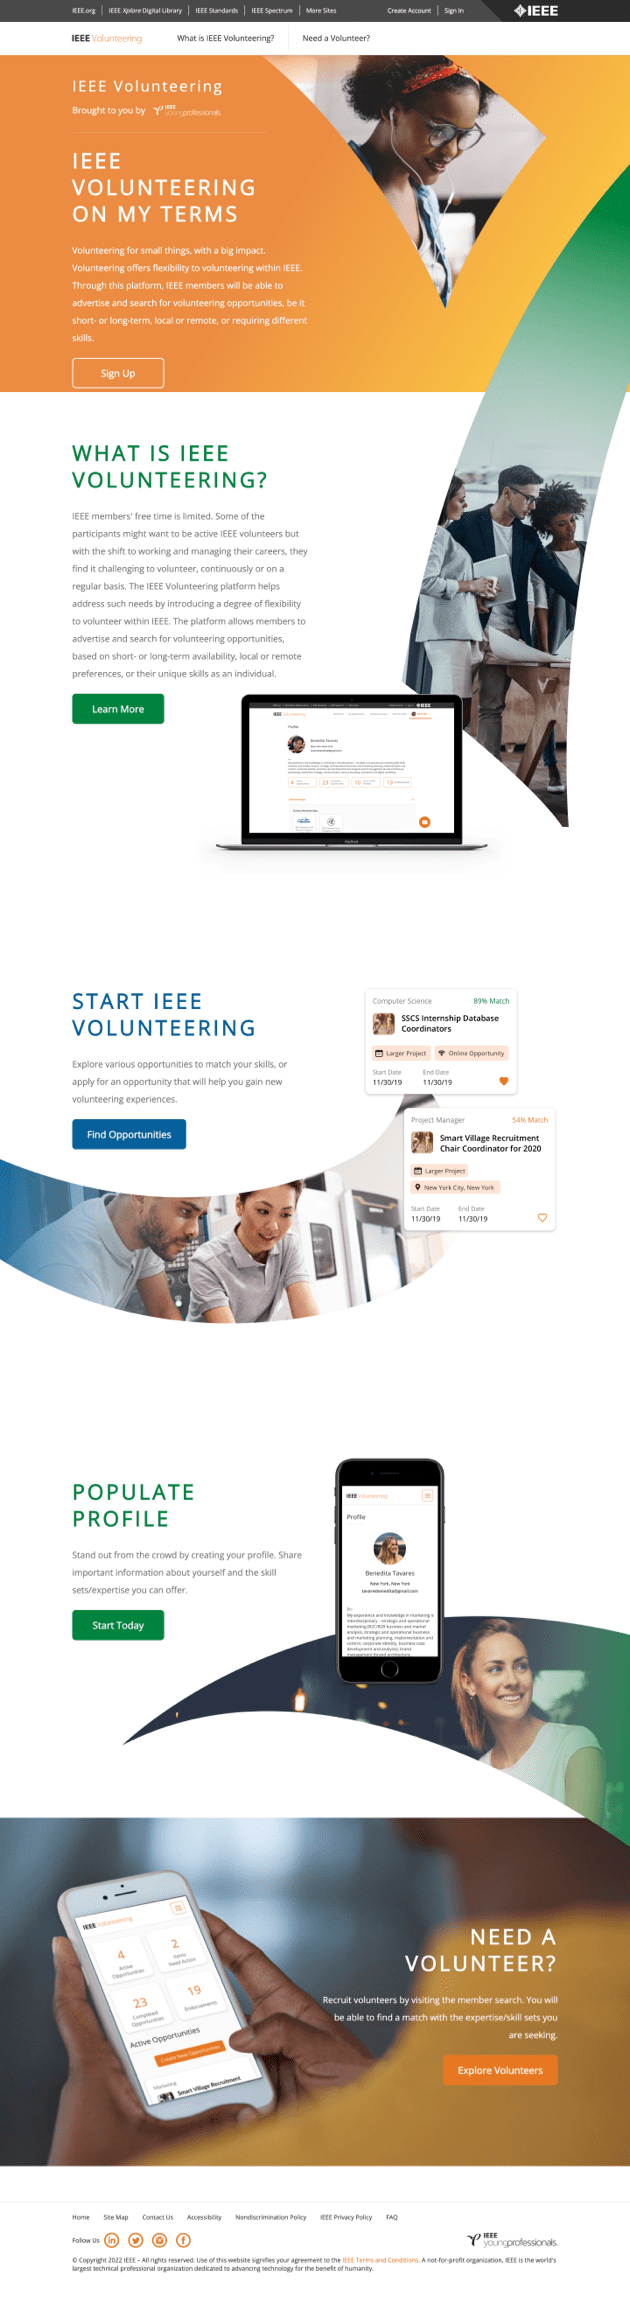 IEEE Volunteer website screengrab